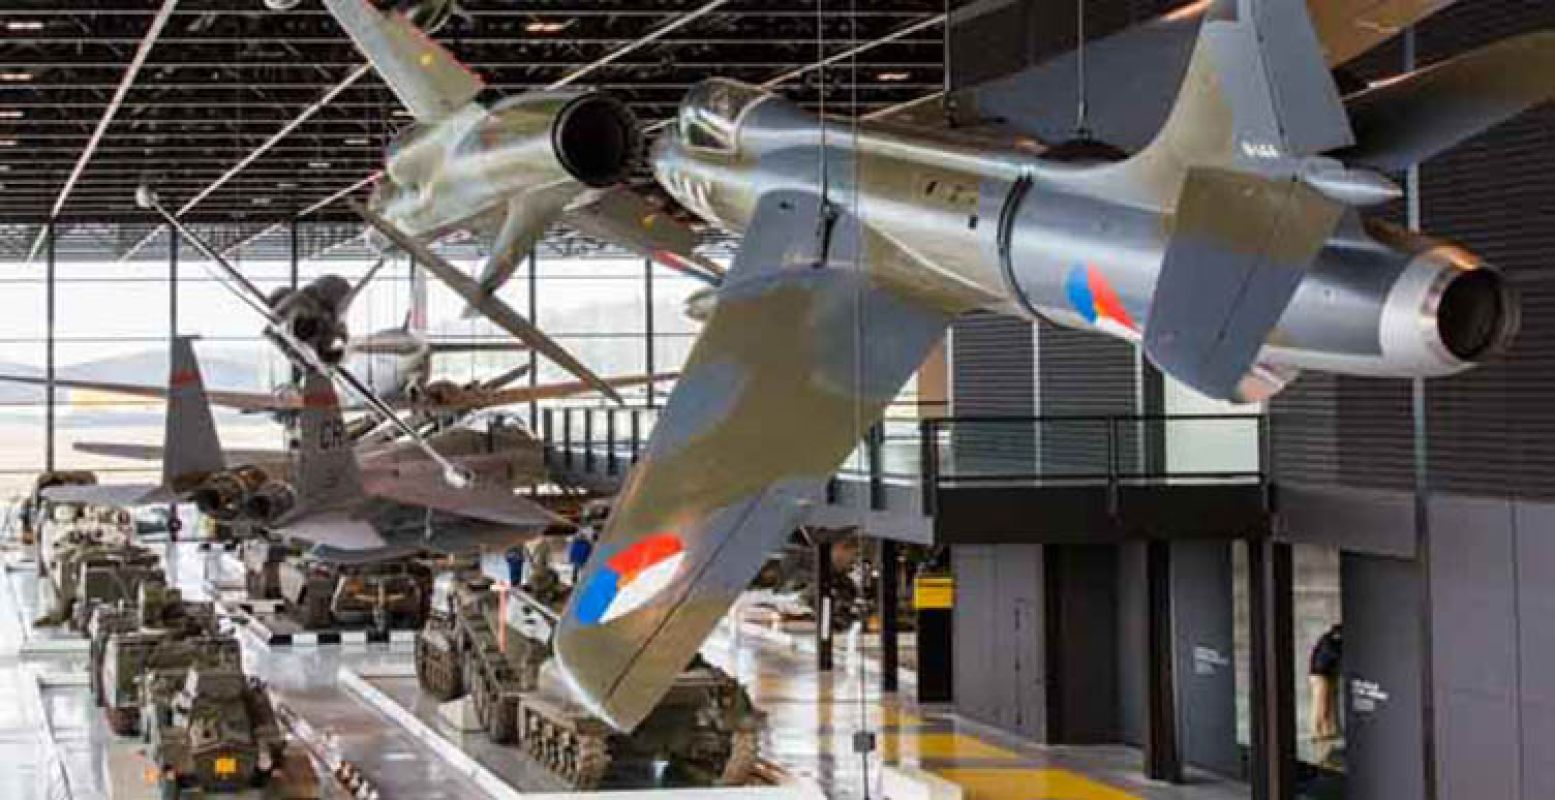 Indrukwekkend: bij NMM hangen gigantische gevechtsvliegtuigen boven je hoofd. Foto: Nationaal Militair Museum.